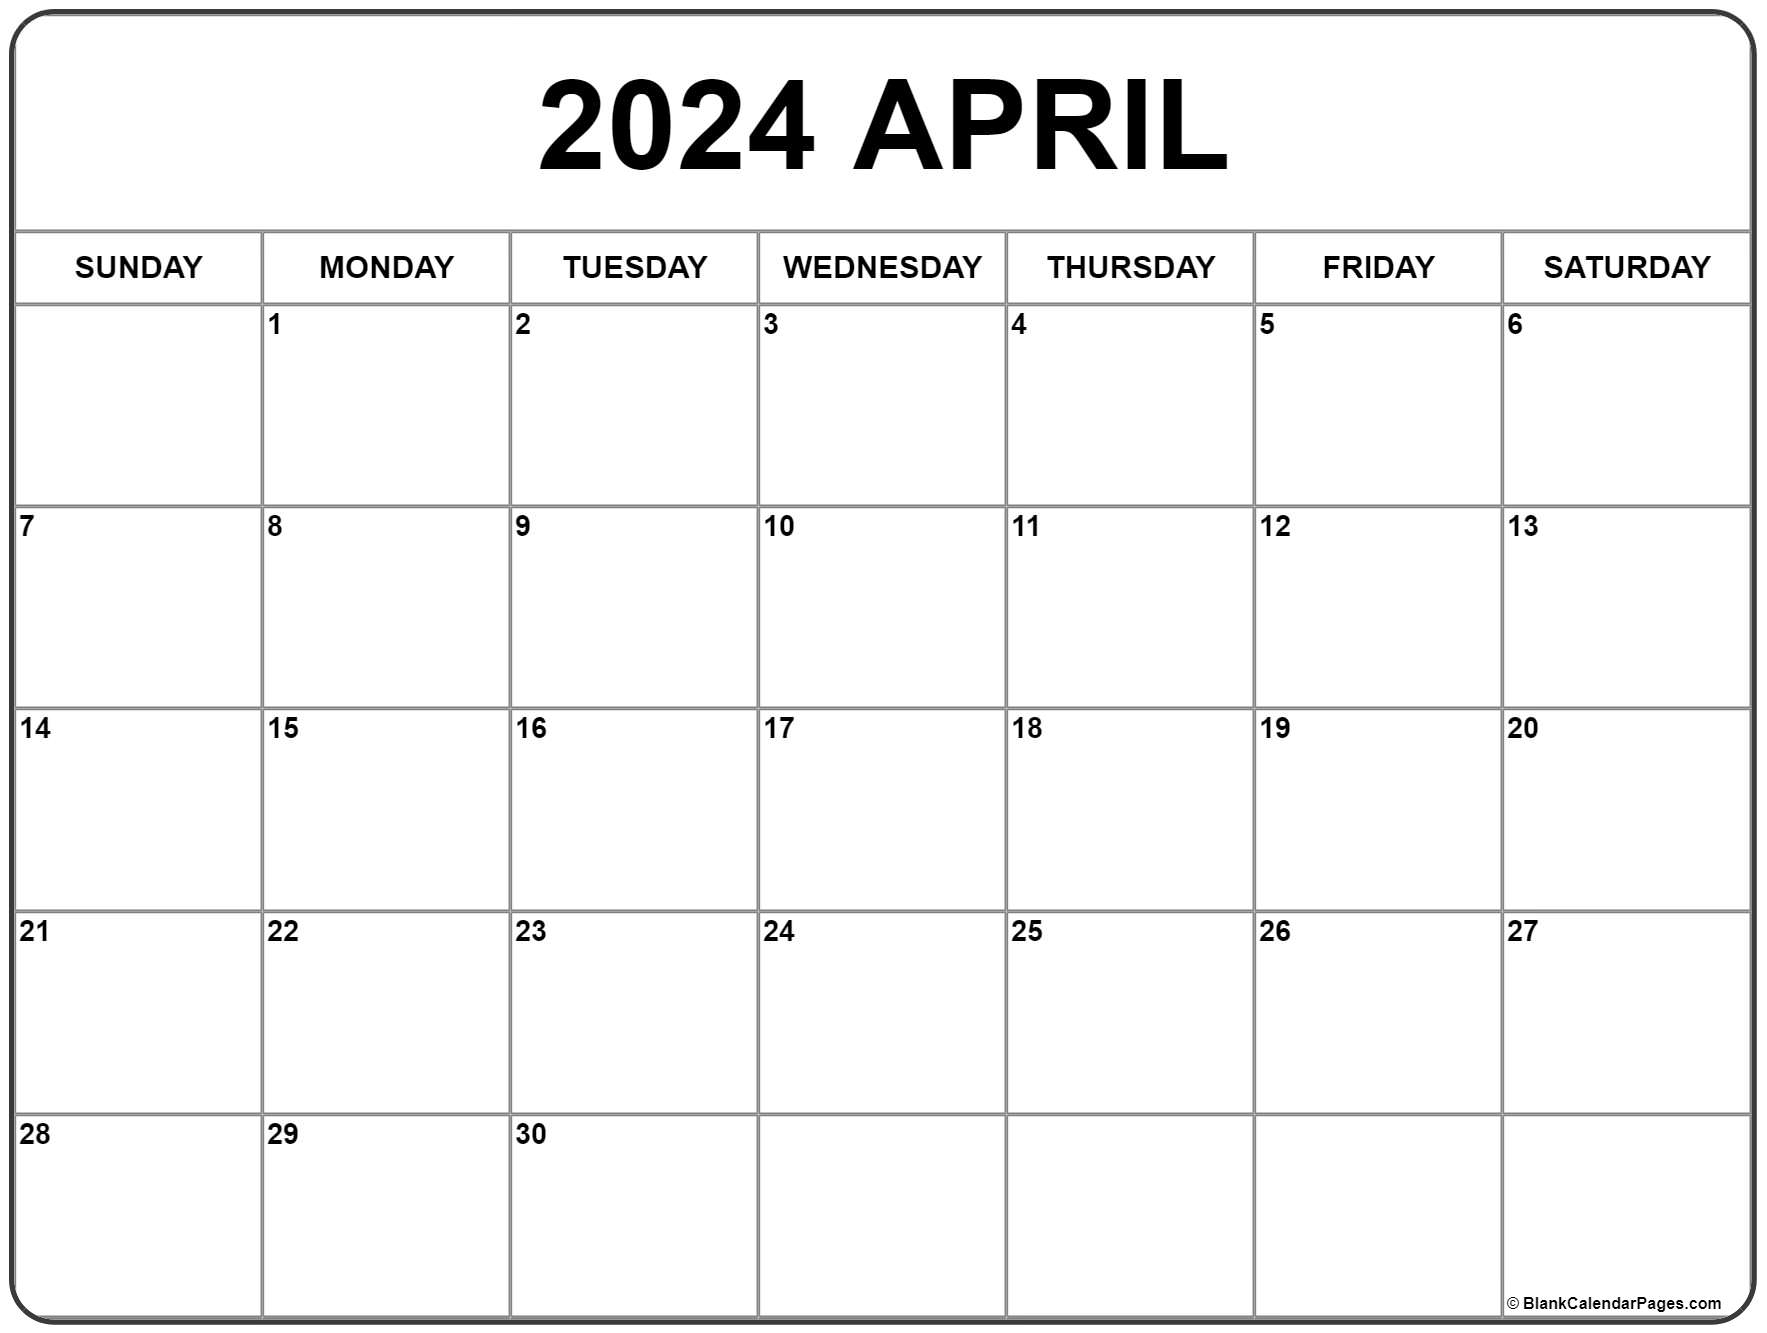 April 2024 Calendar | Free Printable Calendar for Blank April 2024 Calendar Printable